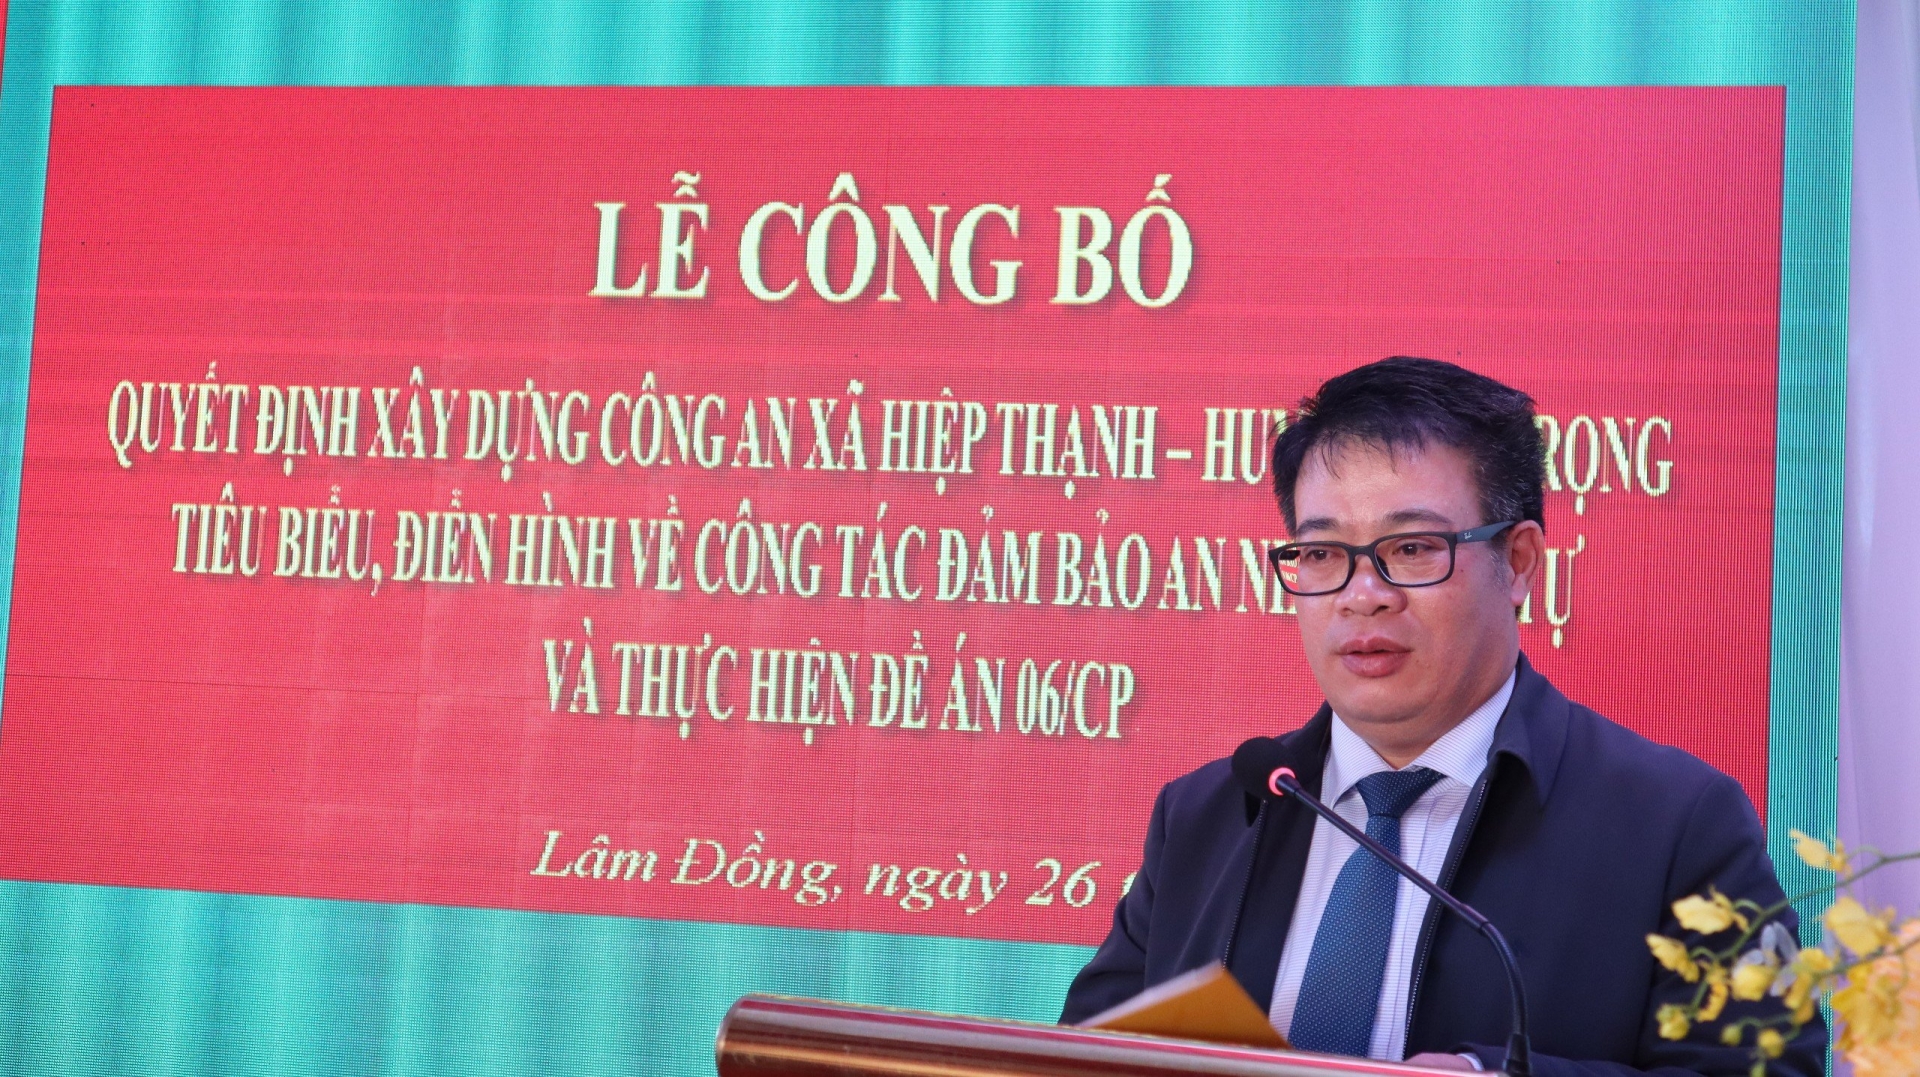 Đồng chí Nguyễn Ngọc Phúc – Phó Chủ tịch UBND tỉnh, phát biêu tại buổi lễ.